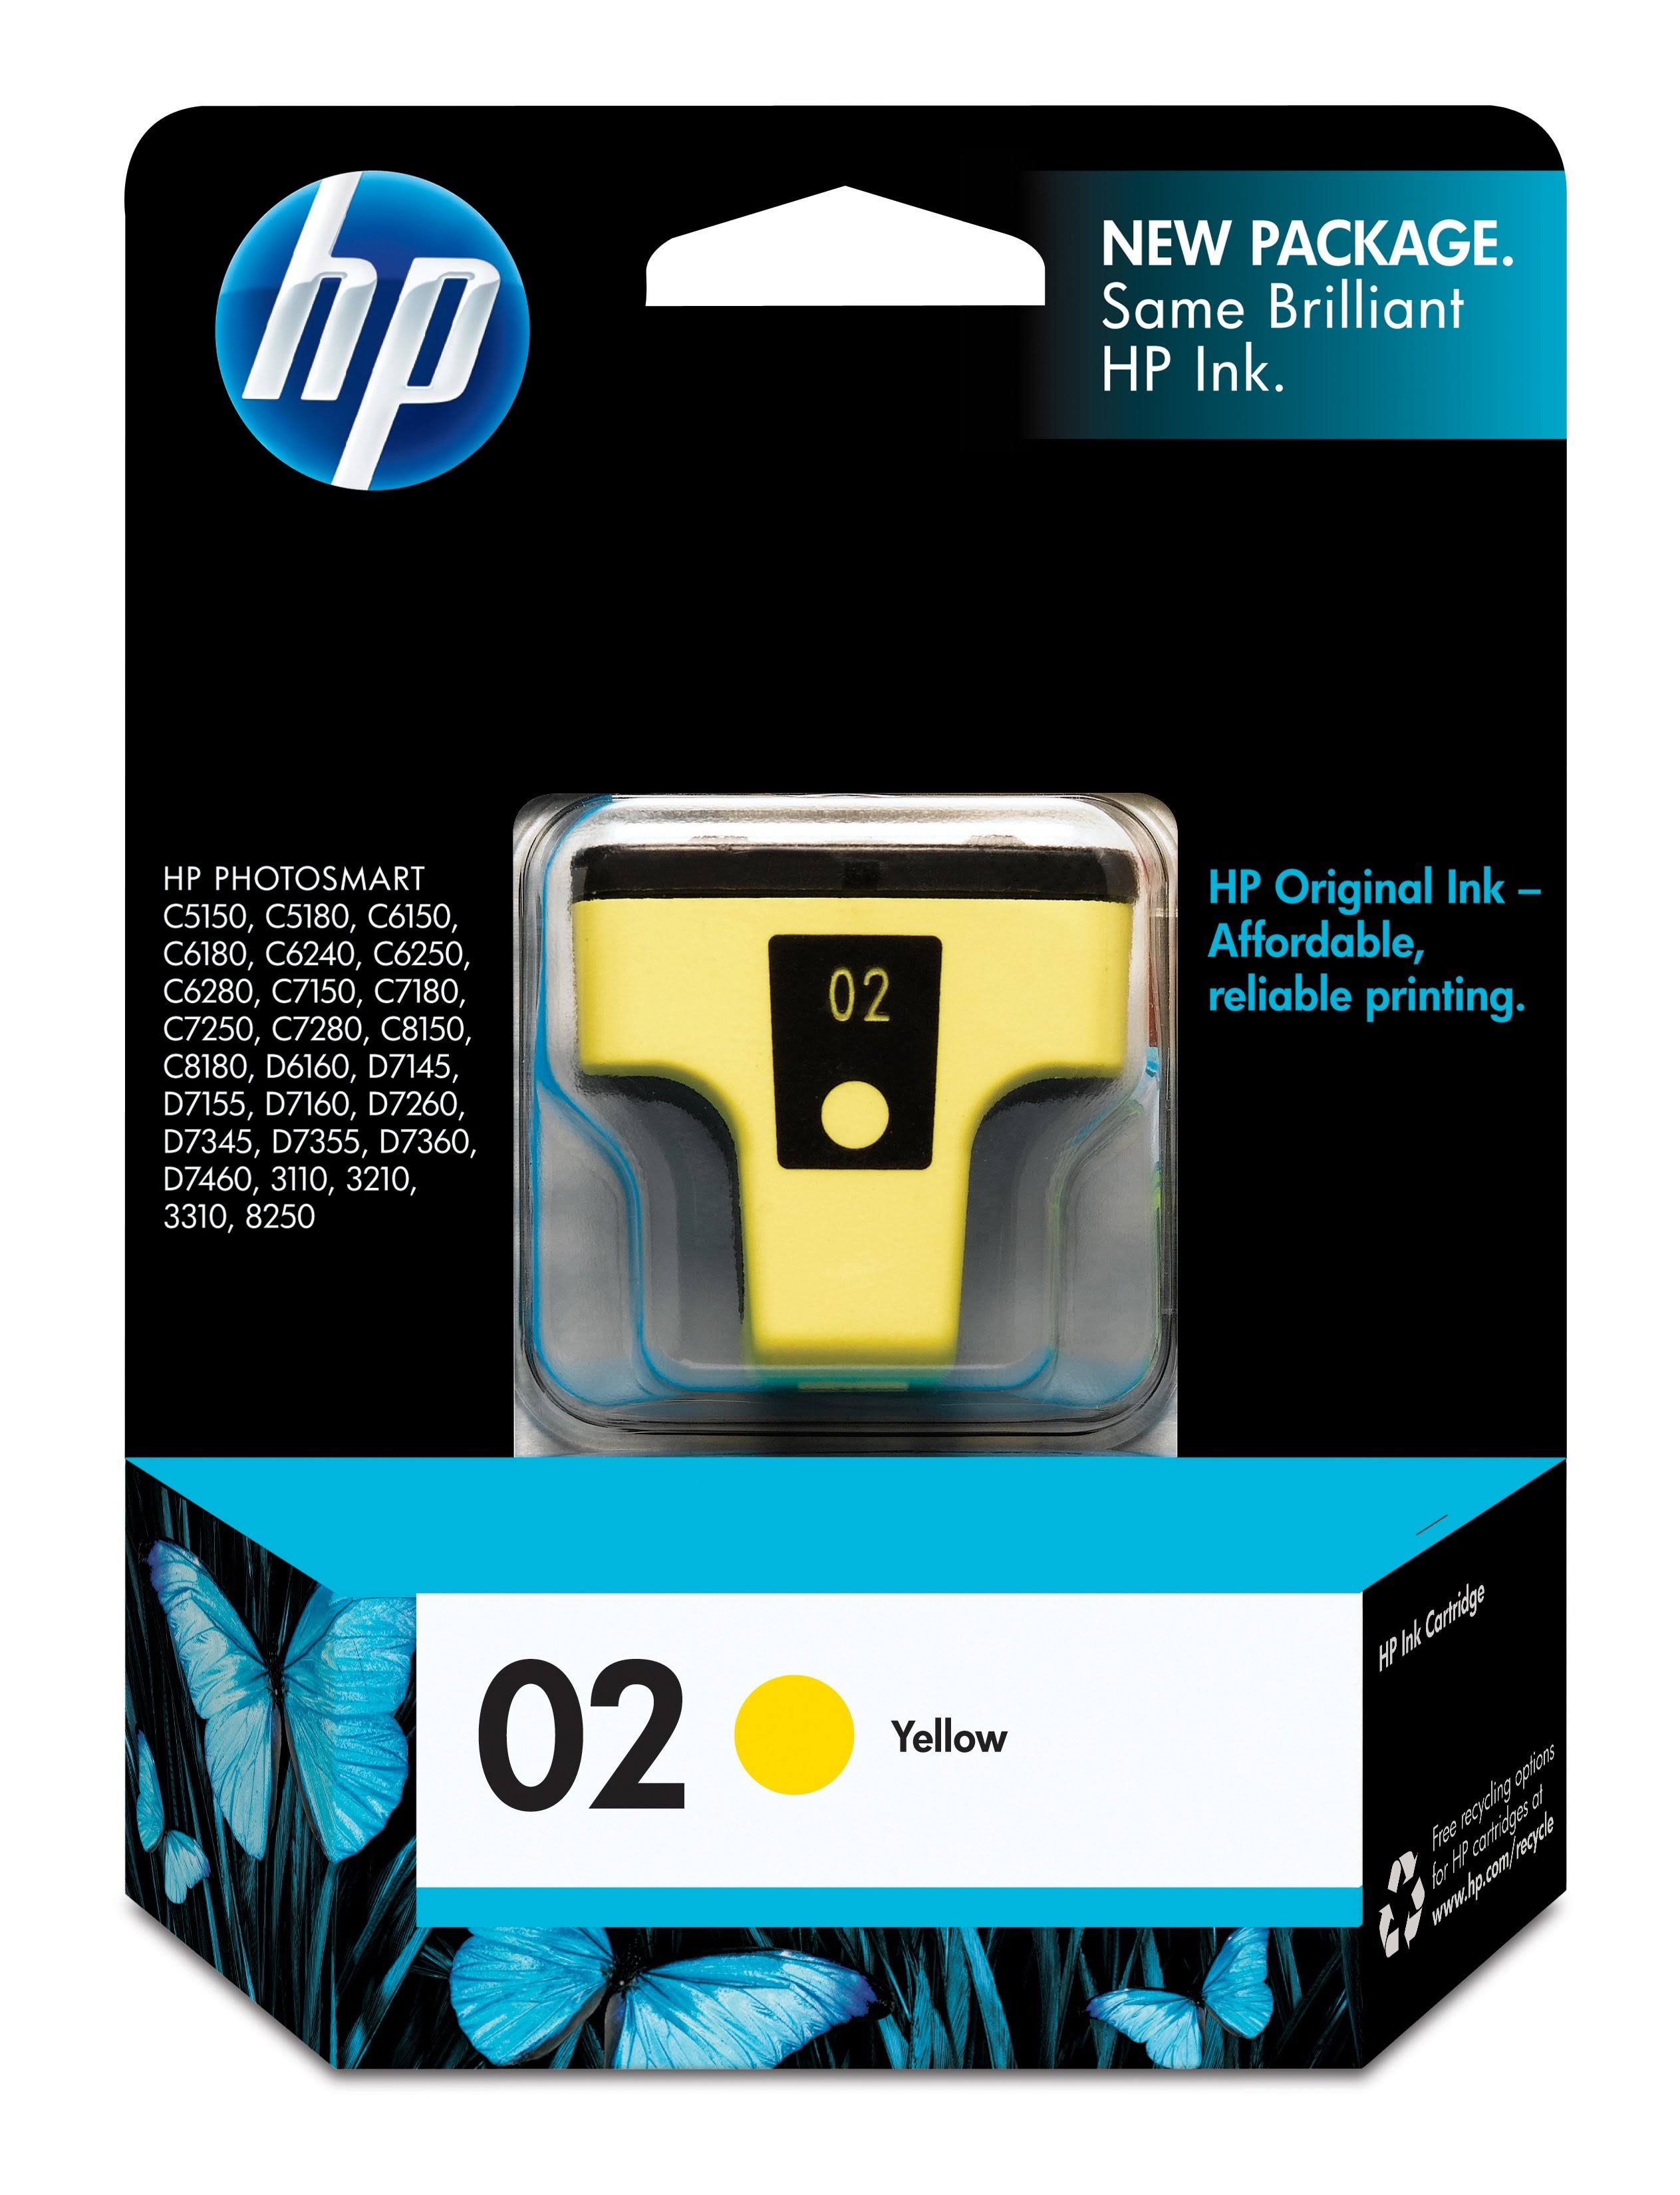 HP Original Ink Cartridge - 02 Yellow